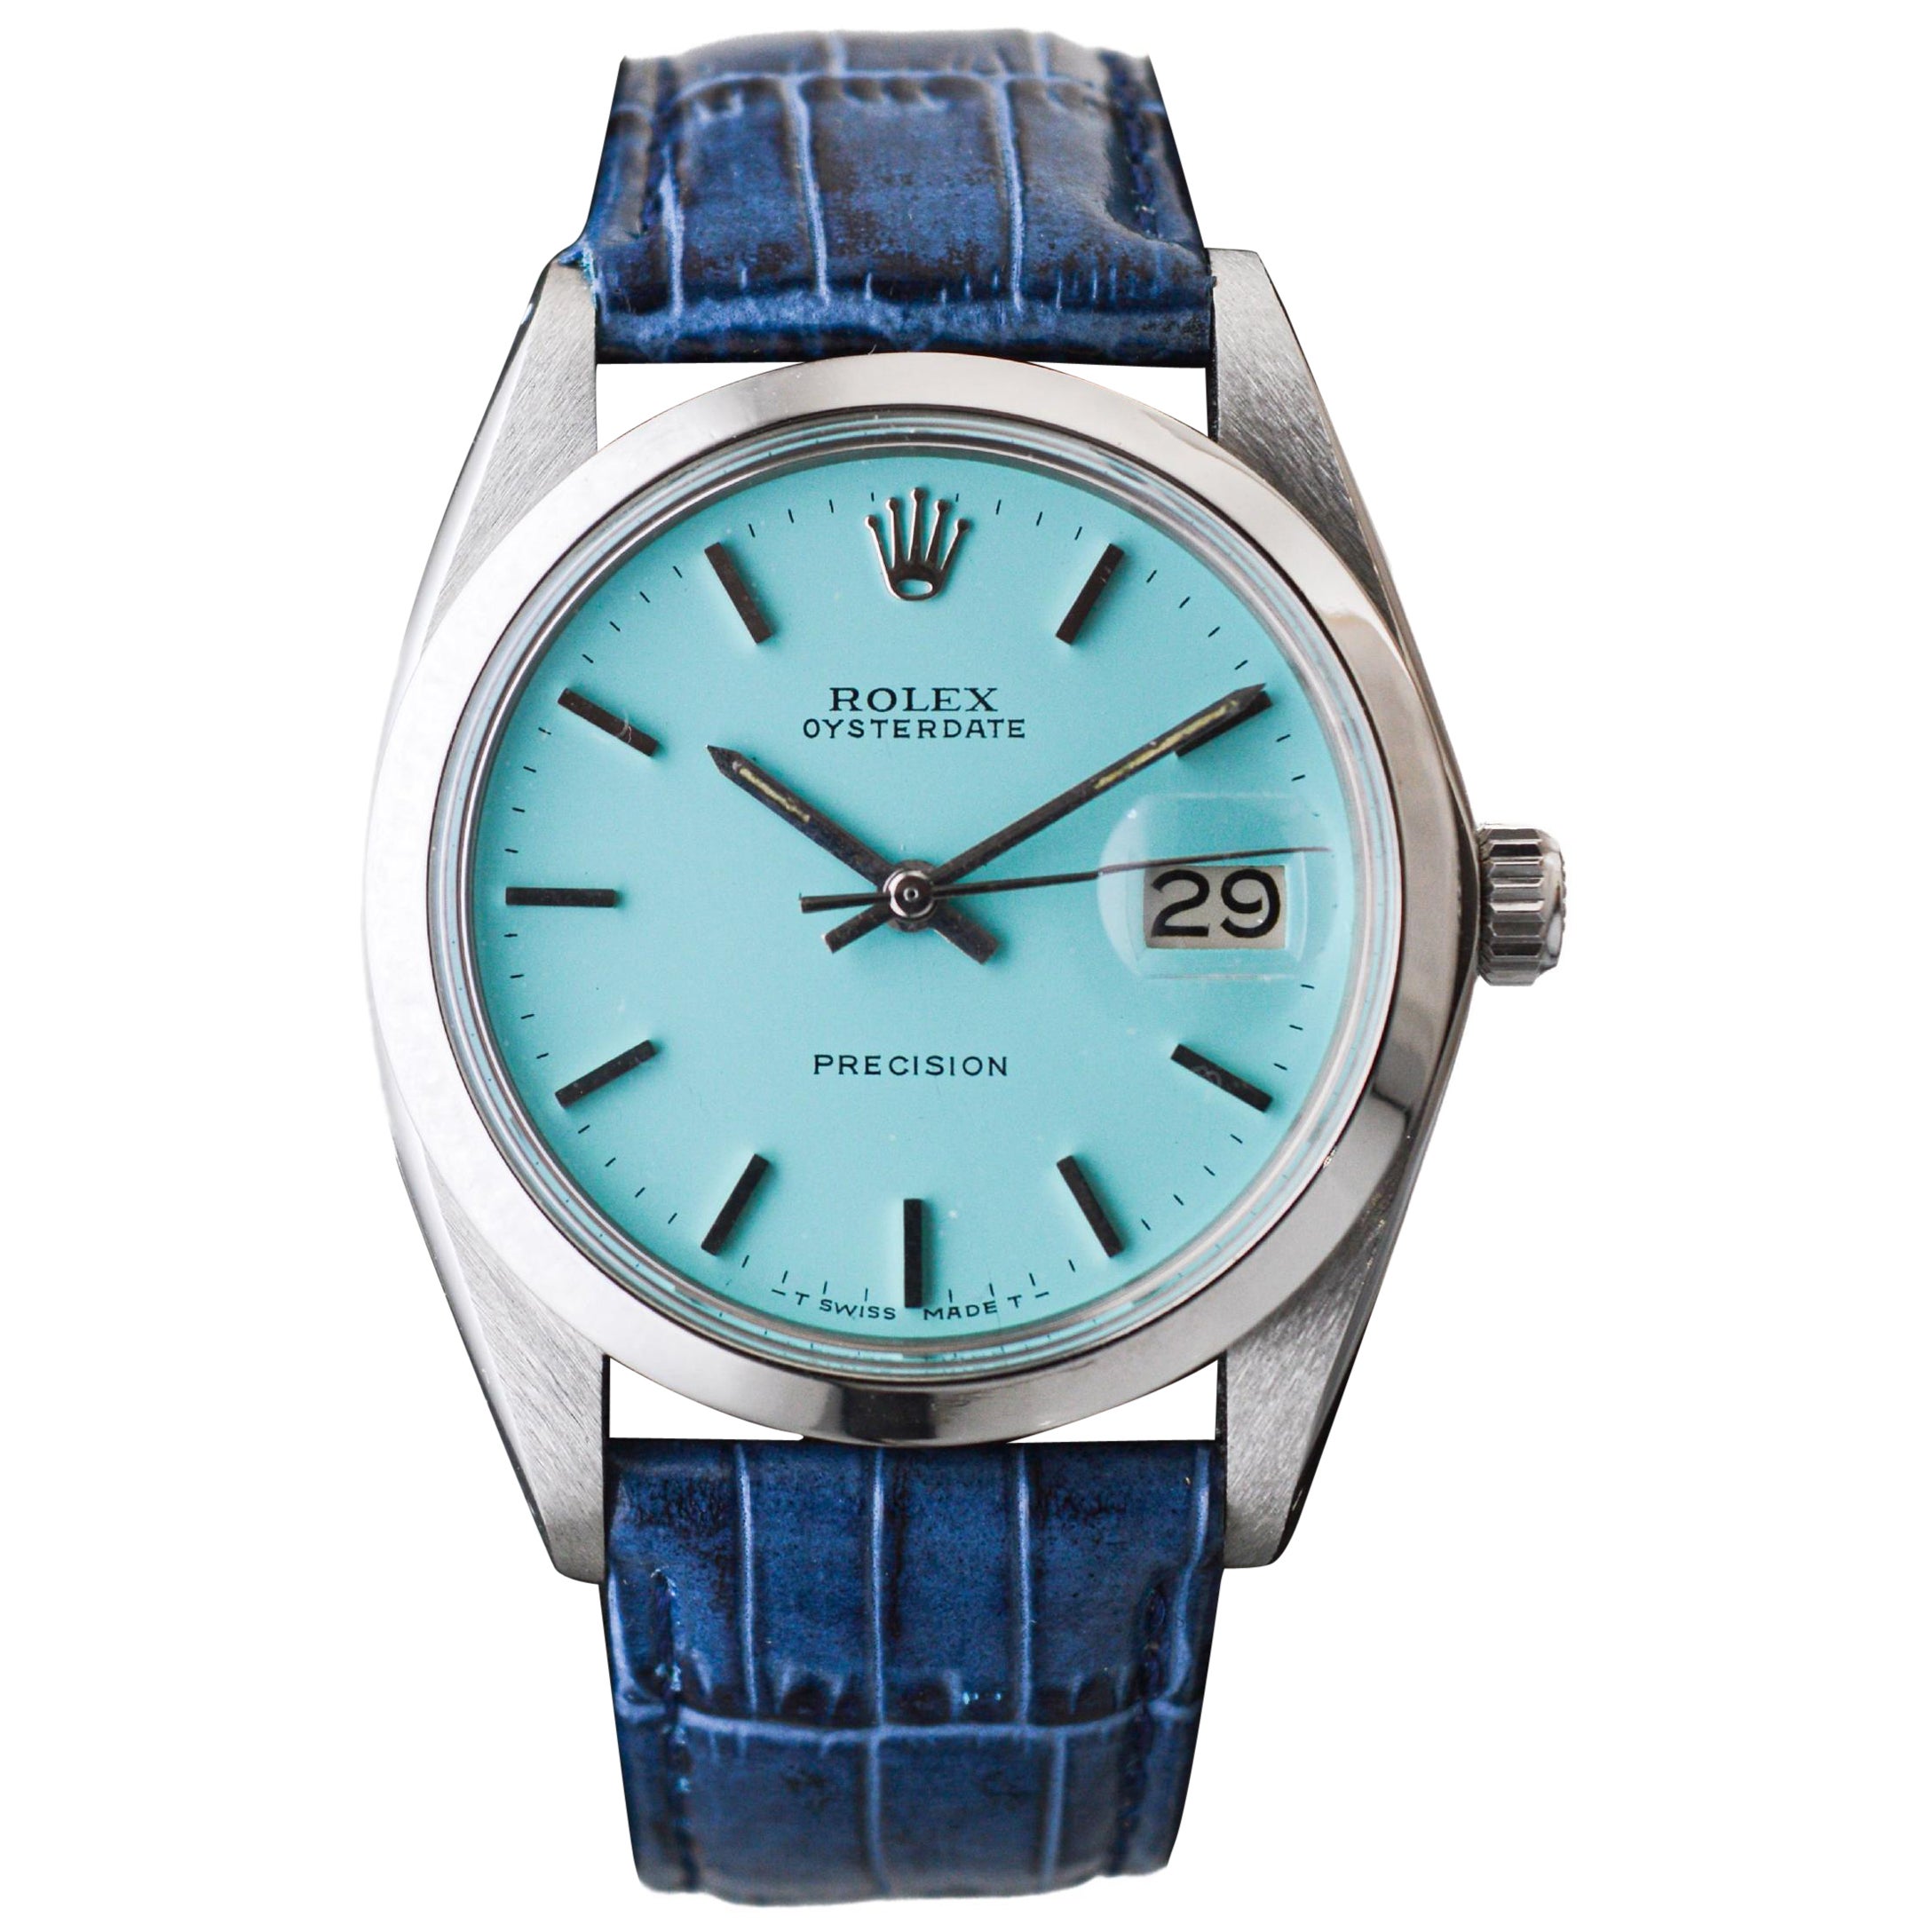 Rolex Oysterdate en acier inoxydable avec cadran bleu Tiffany personnalisé vers les années 1970